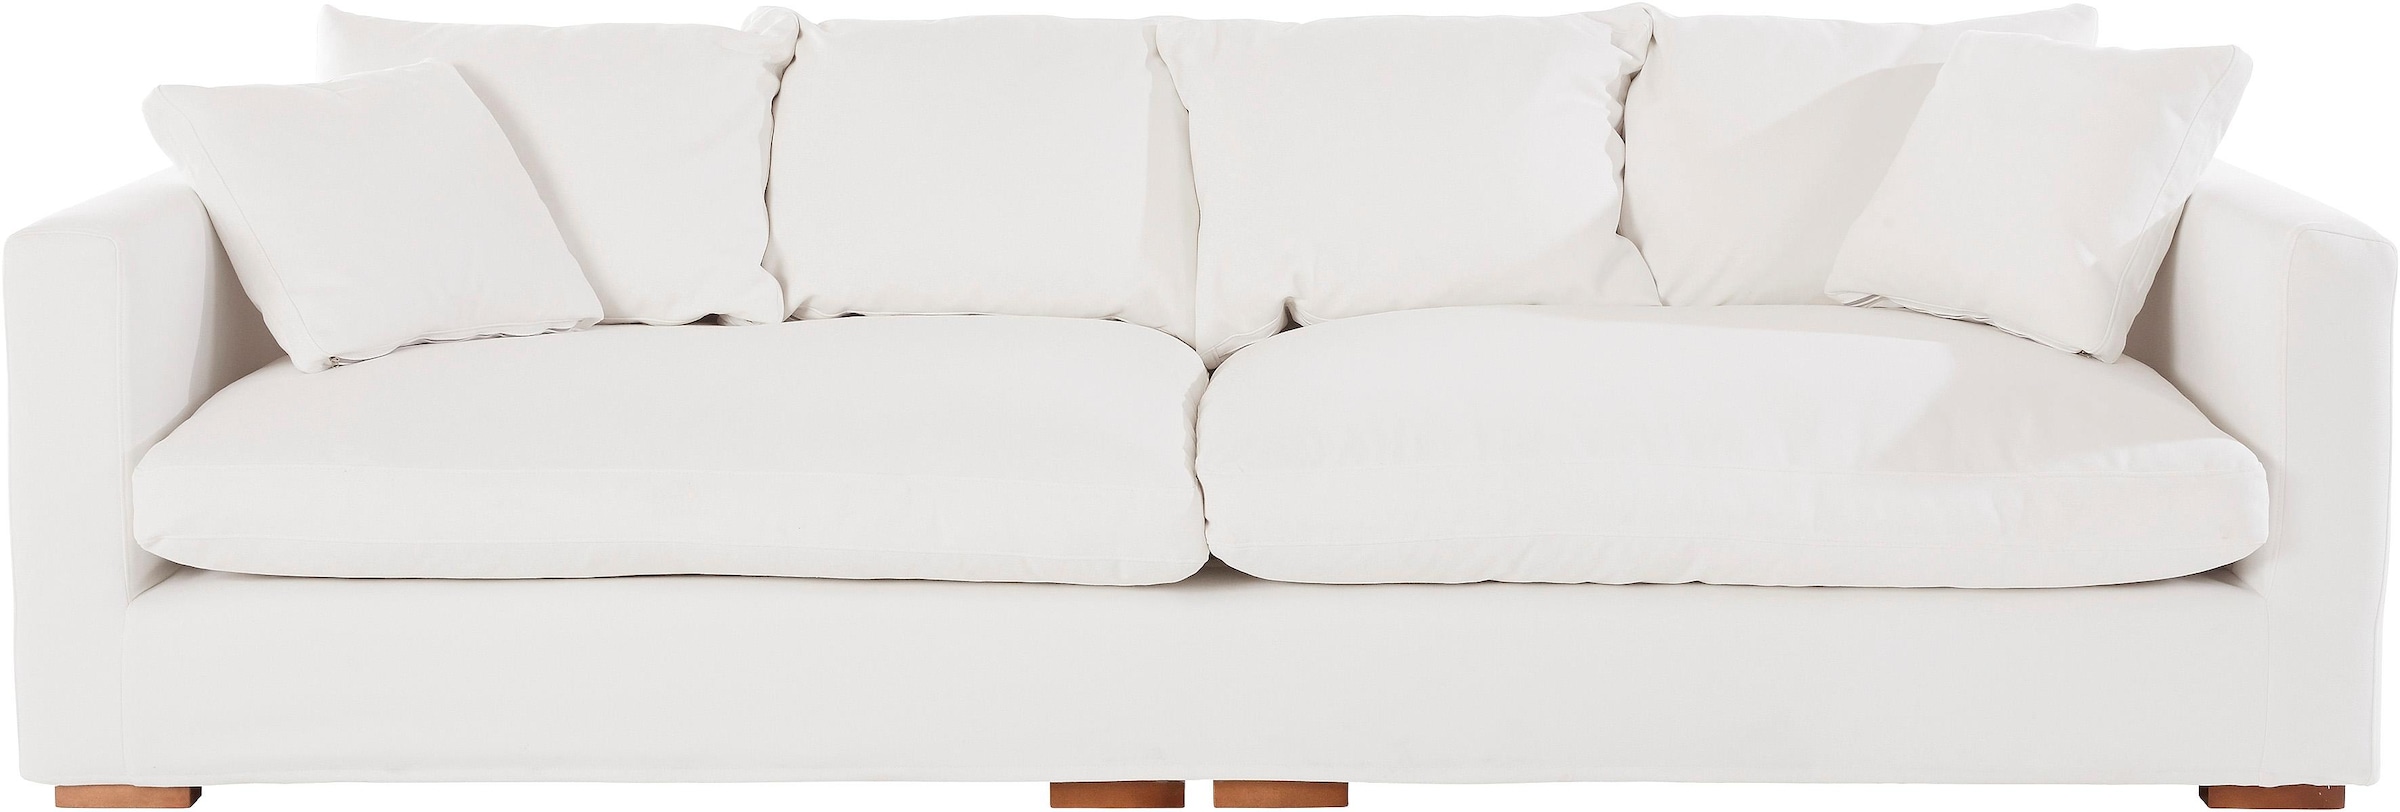 Big-Sofa »Pantin«, extra weich und kuschelig, Füllung mit Federn und Daunen